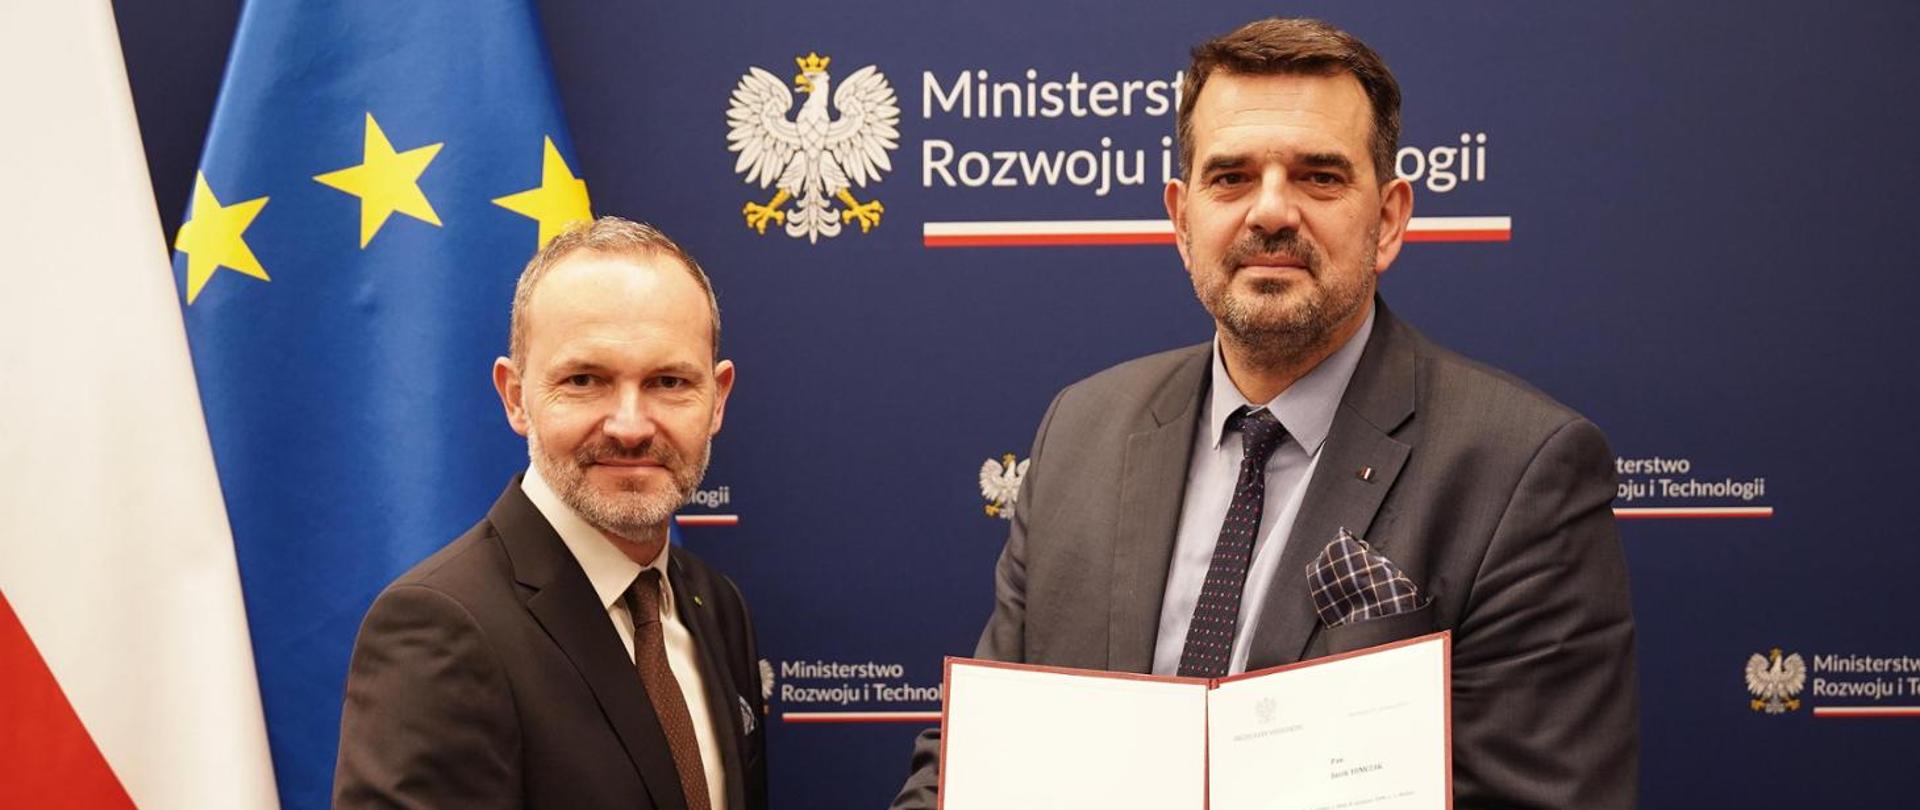 Na zdjęciu widać ministra Krzysztofa Hetmana, który wręcza akt powołania Jackowi Tomczakowi na wiceministra rozwoju. Z tyłu za ministrami baner MRiT, po lewej stronie flaga Polski i Unii